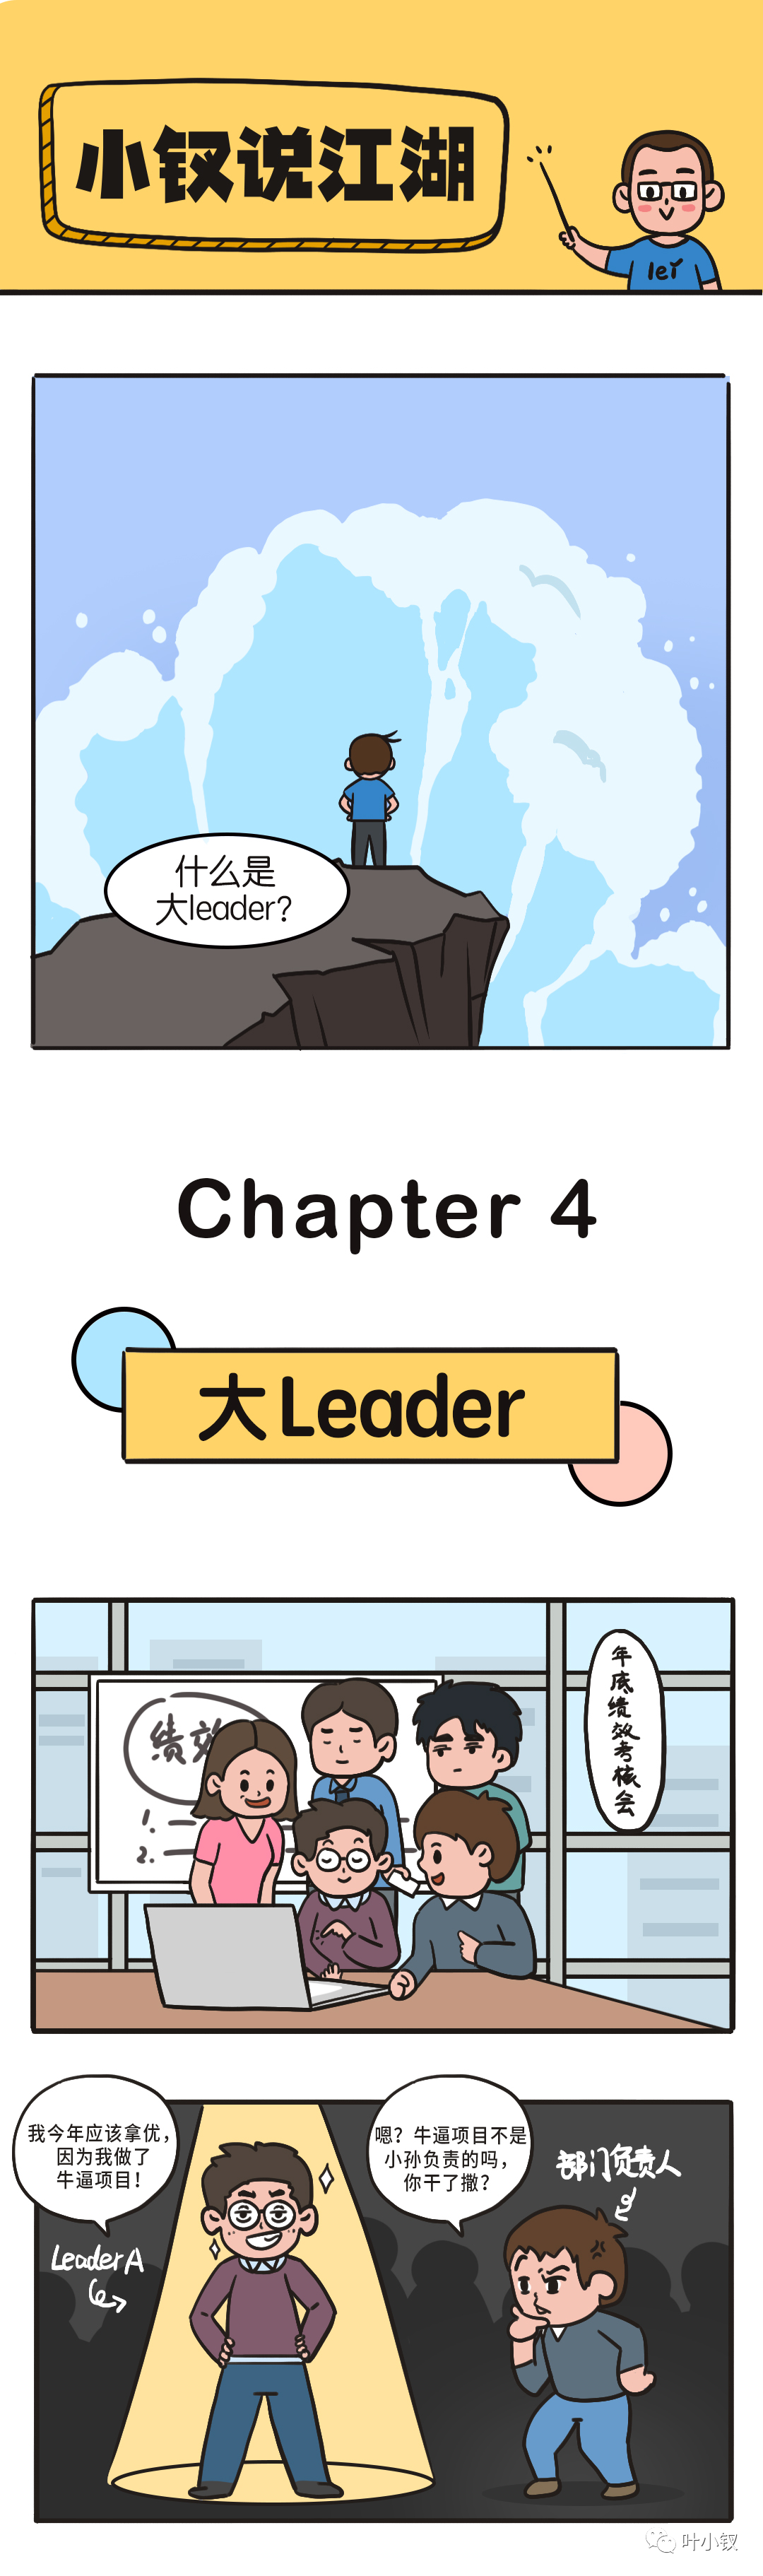 技术管理进阶——一线Leader与大Leader的差异是什么？